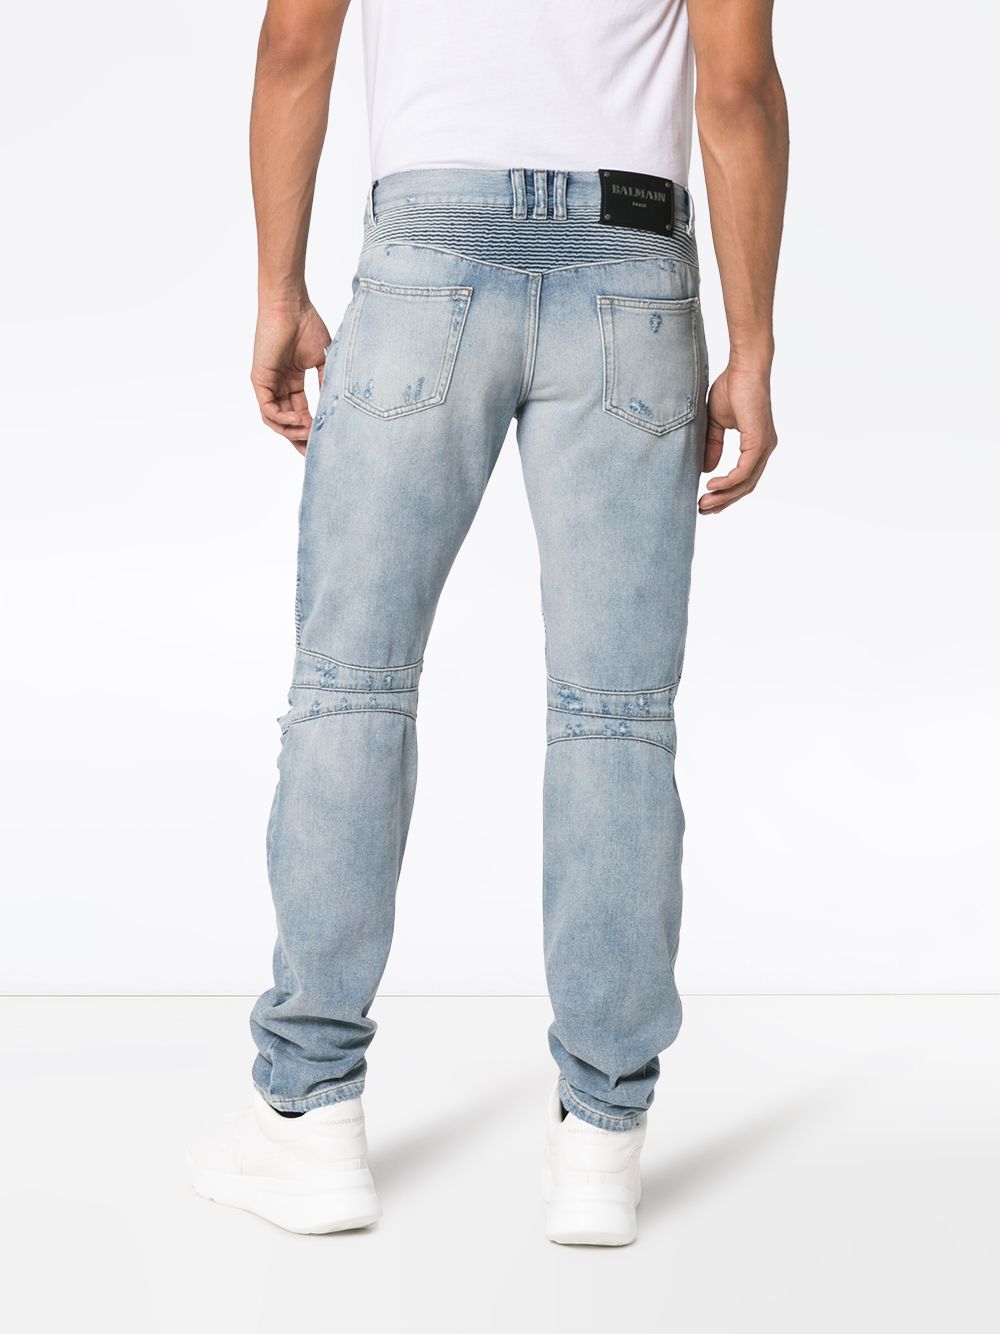 фото Balmain байкерские джинсы узкого кроя с прорванными деталями